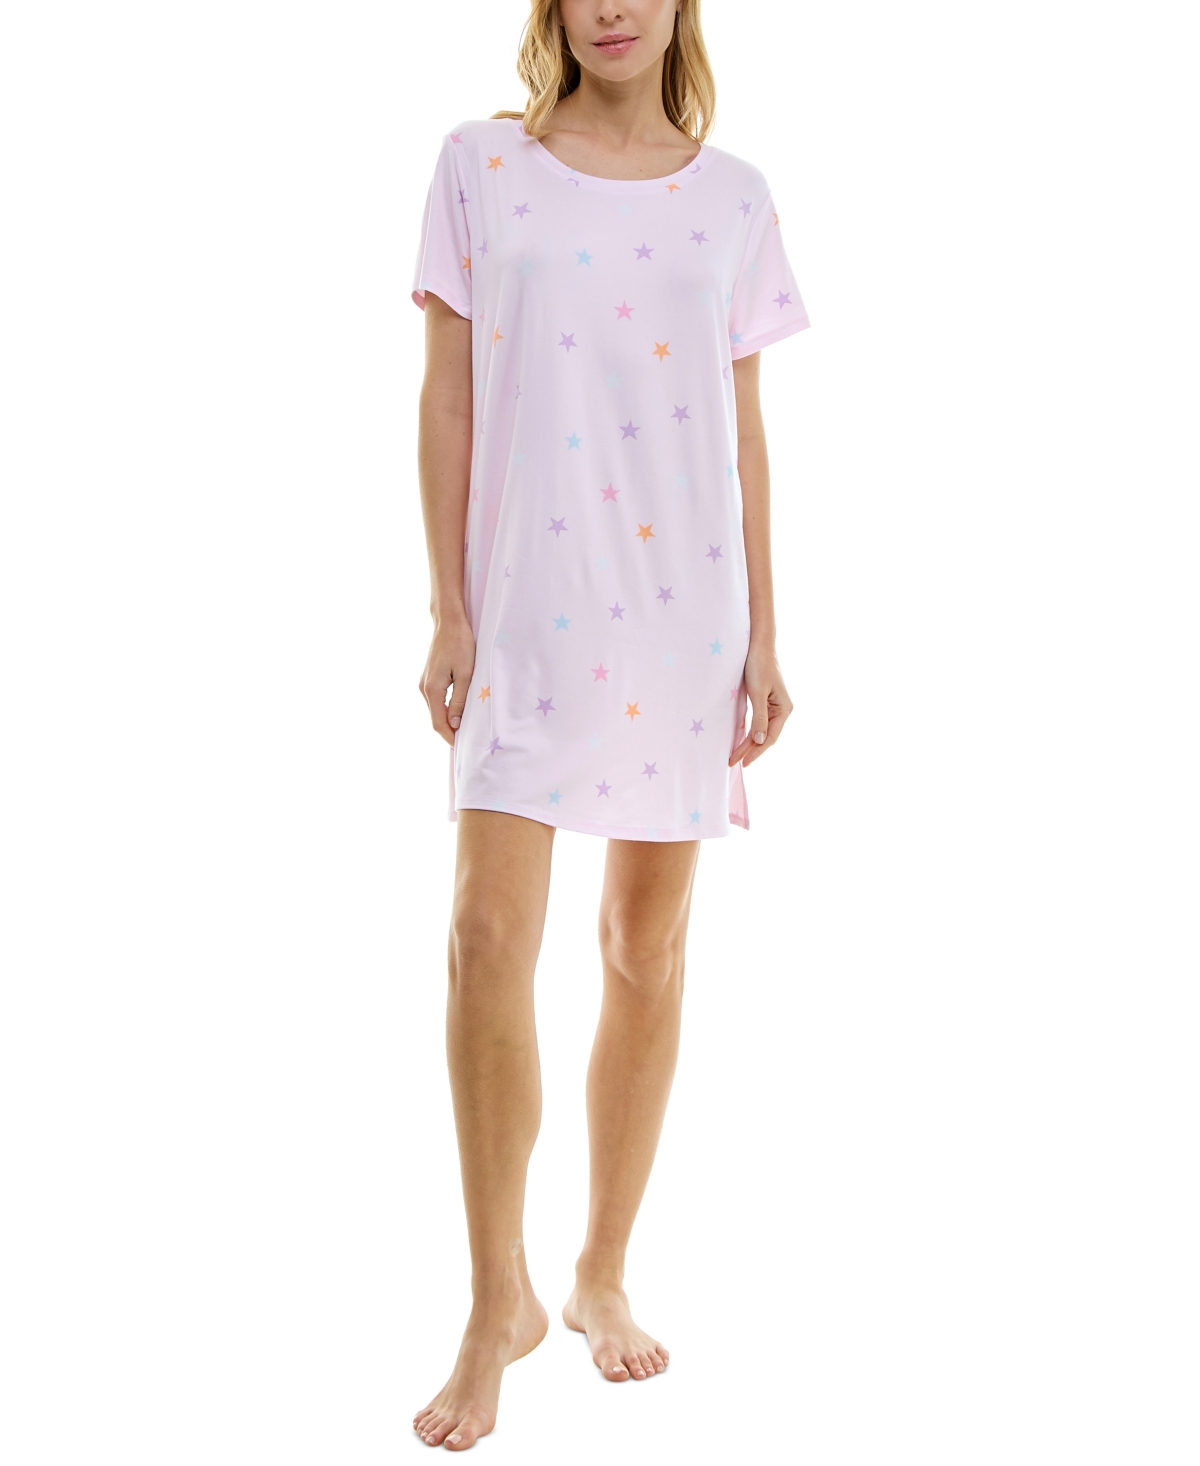 Shop Roudelain Women's Printed Short-sleeve Sleepshirt In Luke Star